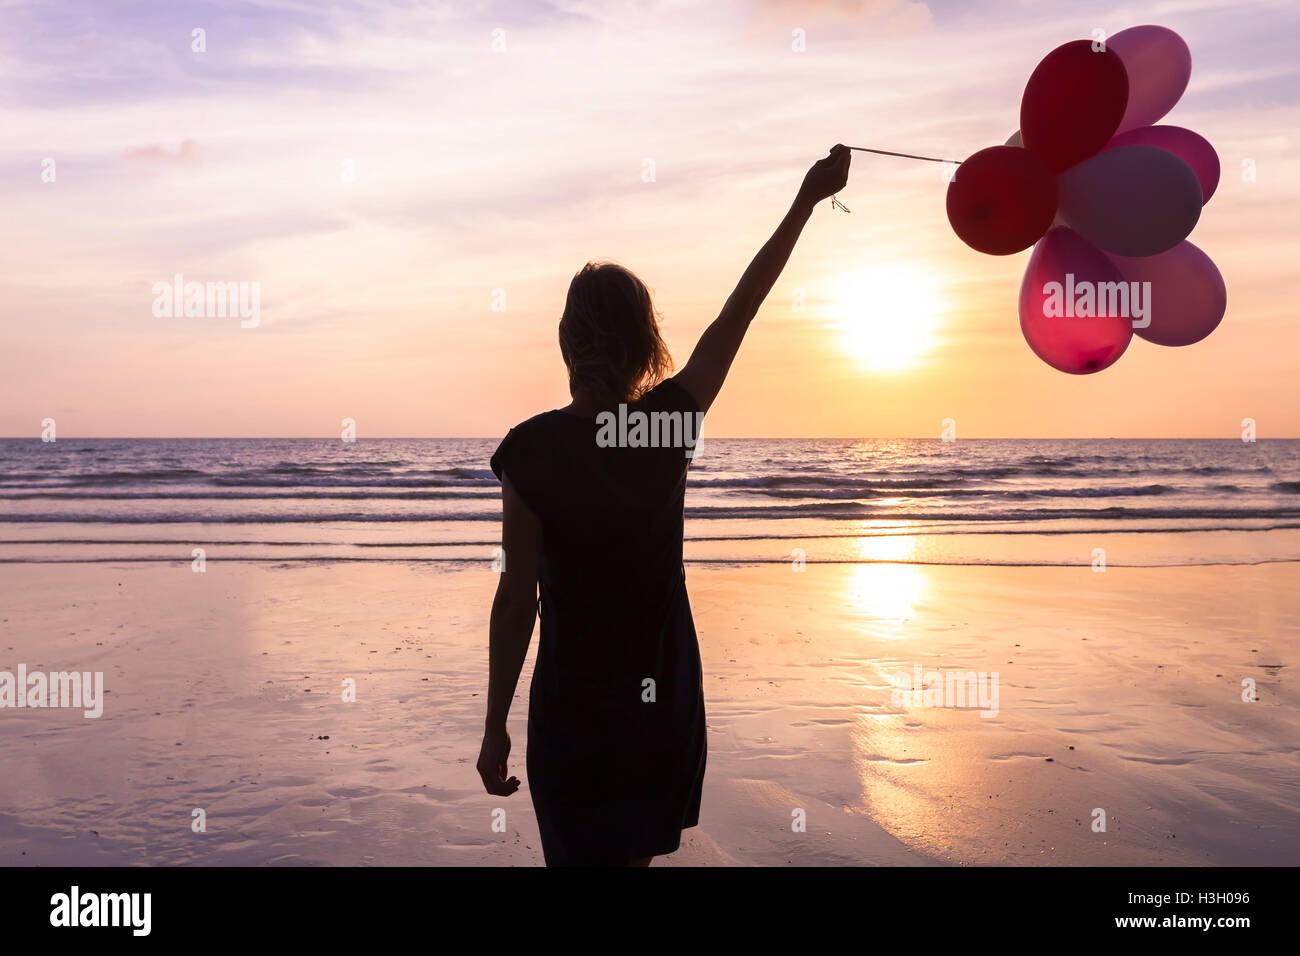 Jeune femme avec des ballons d'hélium dans la main marcher sur la plage au coucher du soleil, concept à propos anniversaire et des événements heureux Banque D'Images